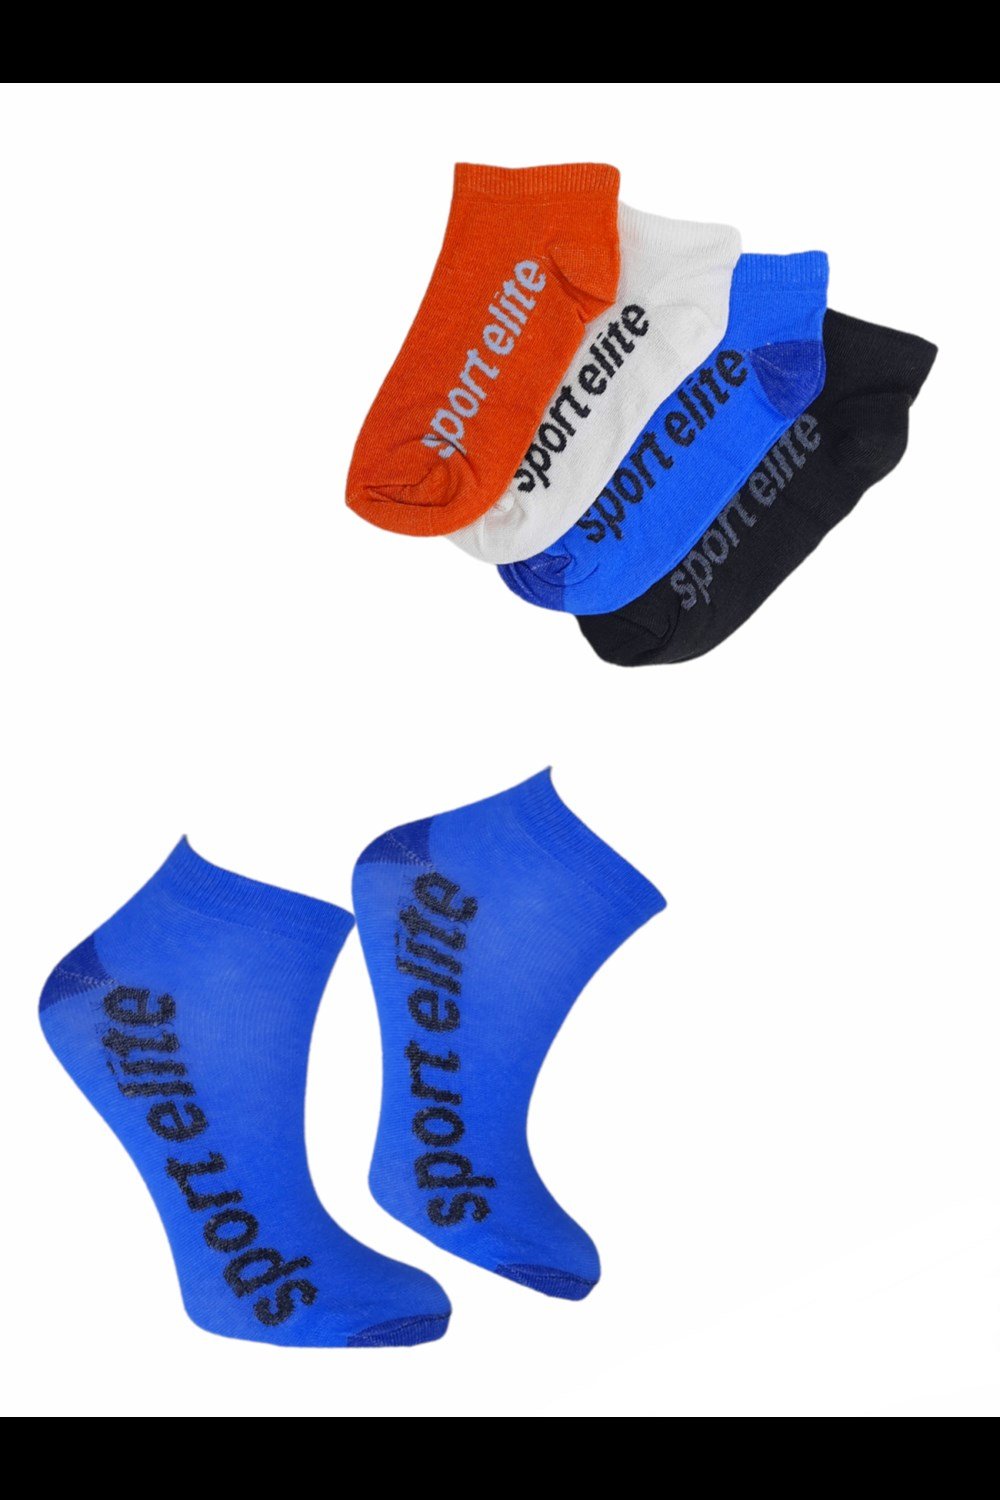 Black Arden Socks - Erkek Çocuk Sport Elite Yazılı Kısa Yazlık Patik Çorap  7-8 Yaş Bt-0538 4 Çift